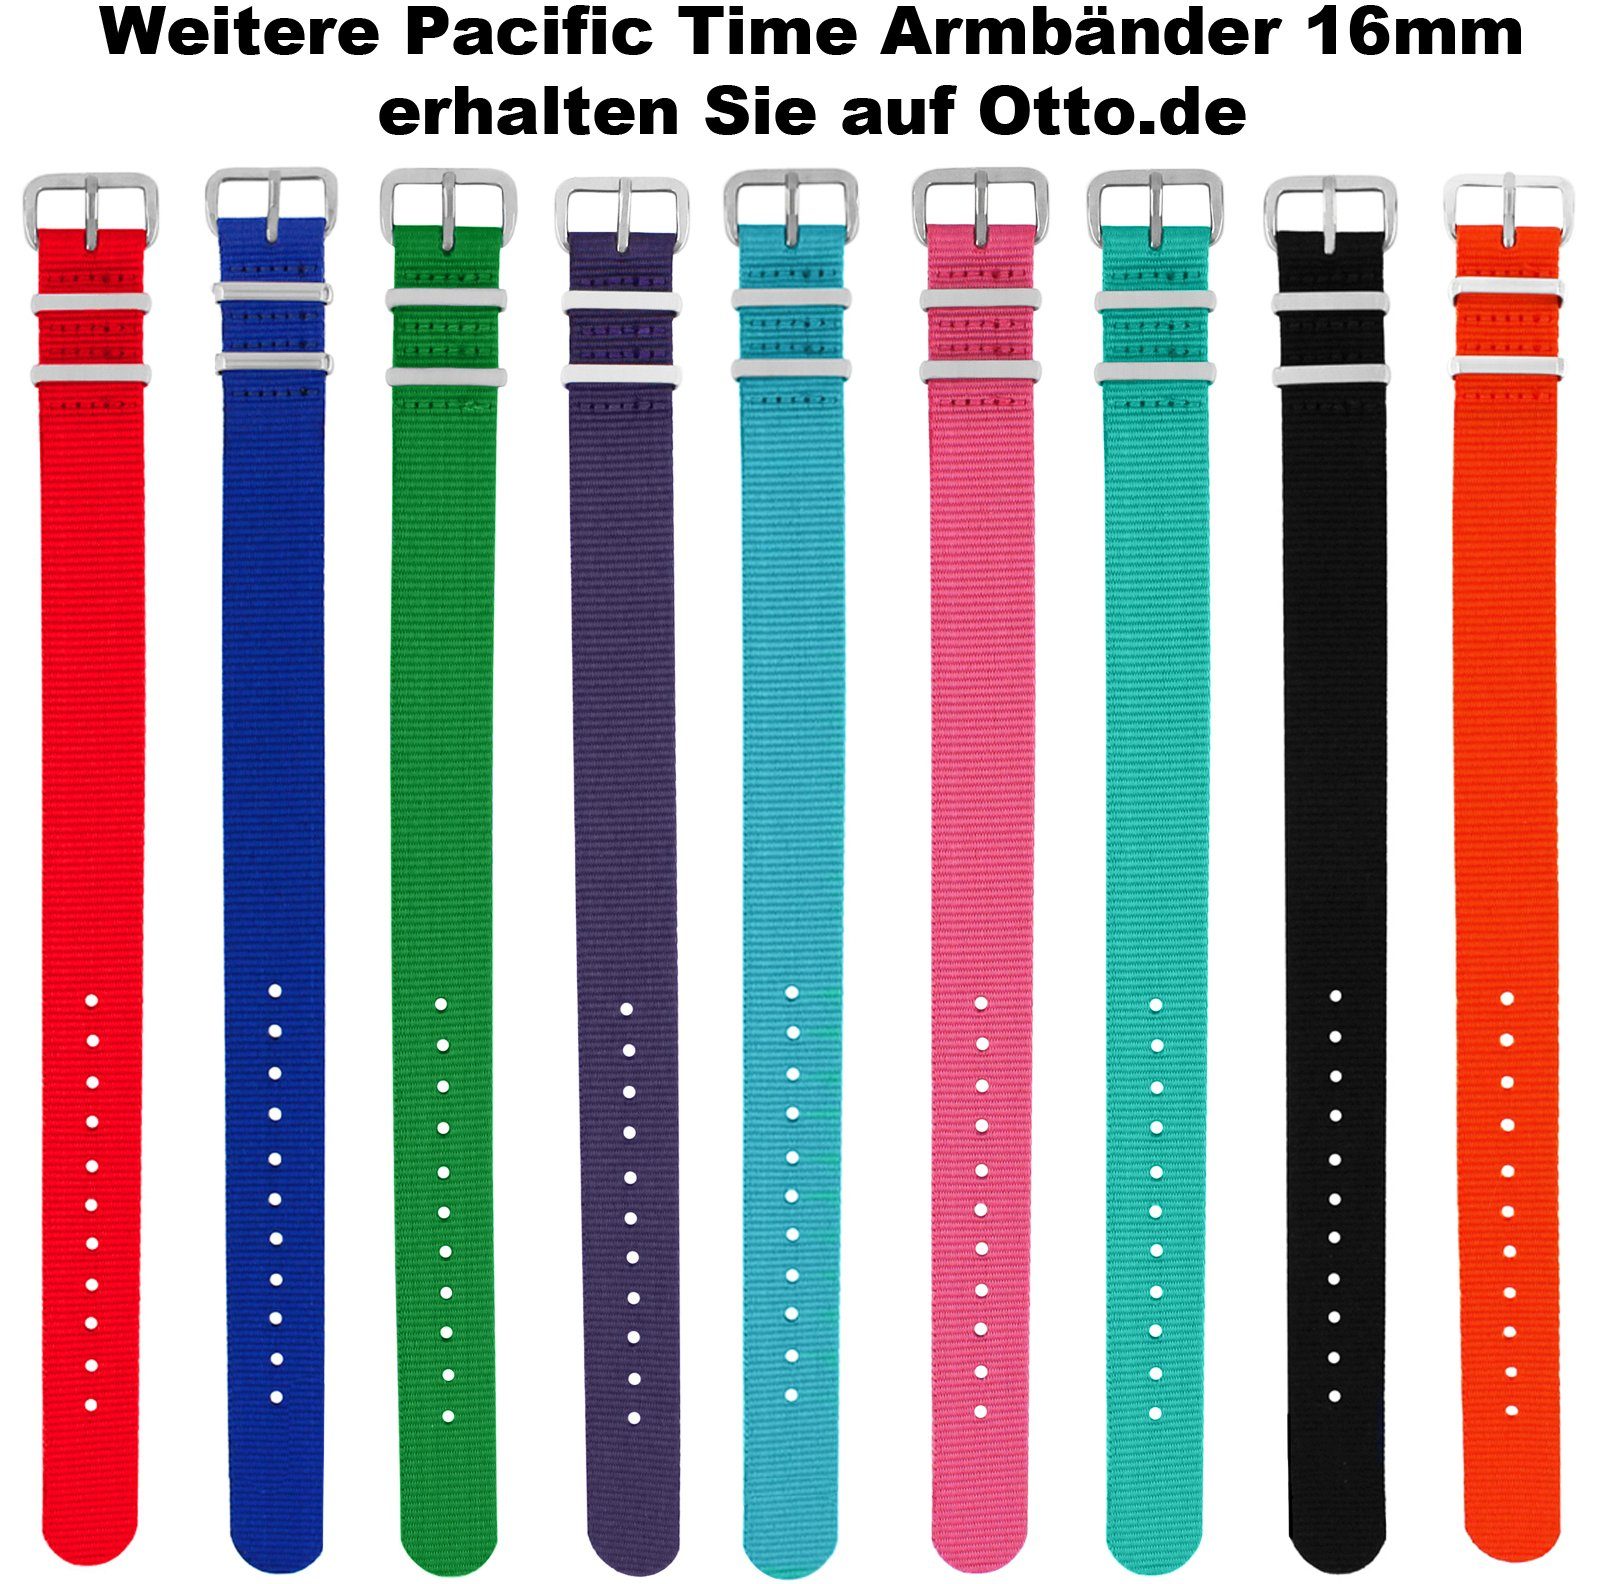 Pacific Time Quarzuhr Kinder und Design Armbanduhr blau - Versand Gratis Wechselarmband, Traktor blau gestreift weiß Mix Match